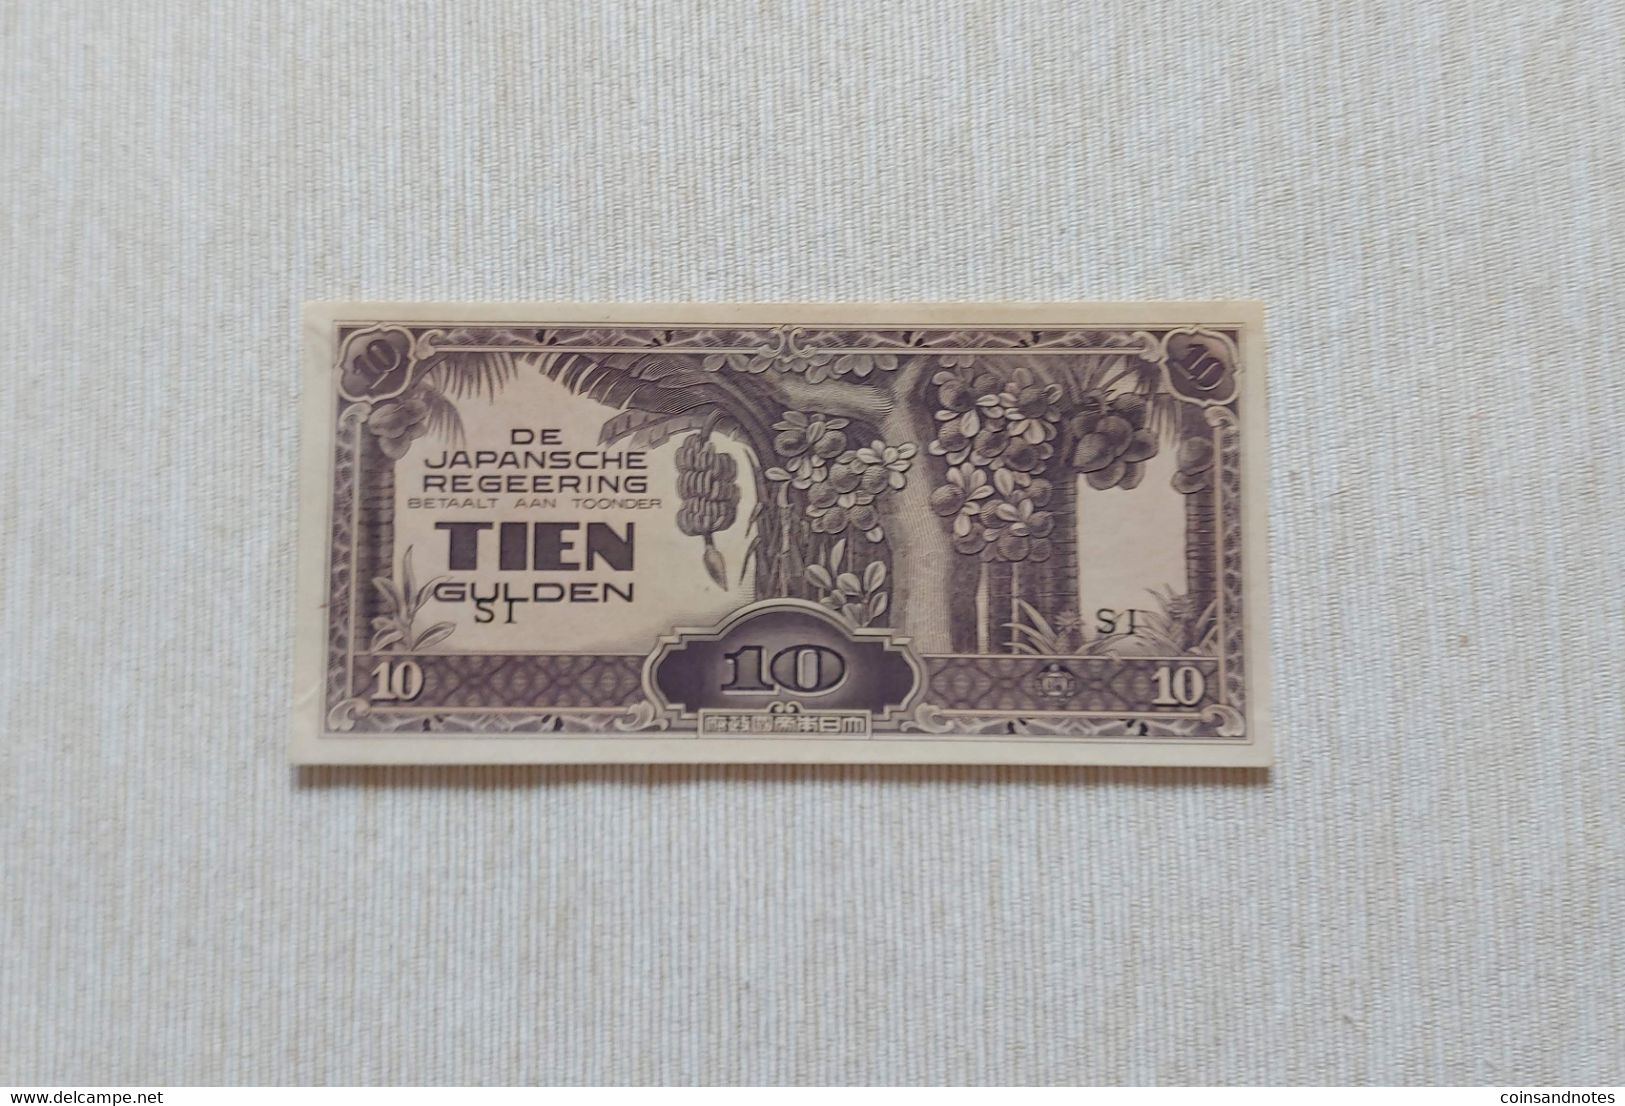 De Japansche Regeering 1942 - Netherlands East Indies (Indonesia) - 10 Gulden - P#125c - UNC - Niederländisch-Indien